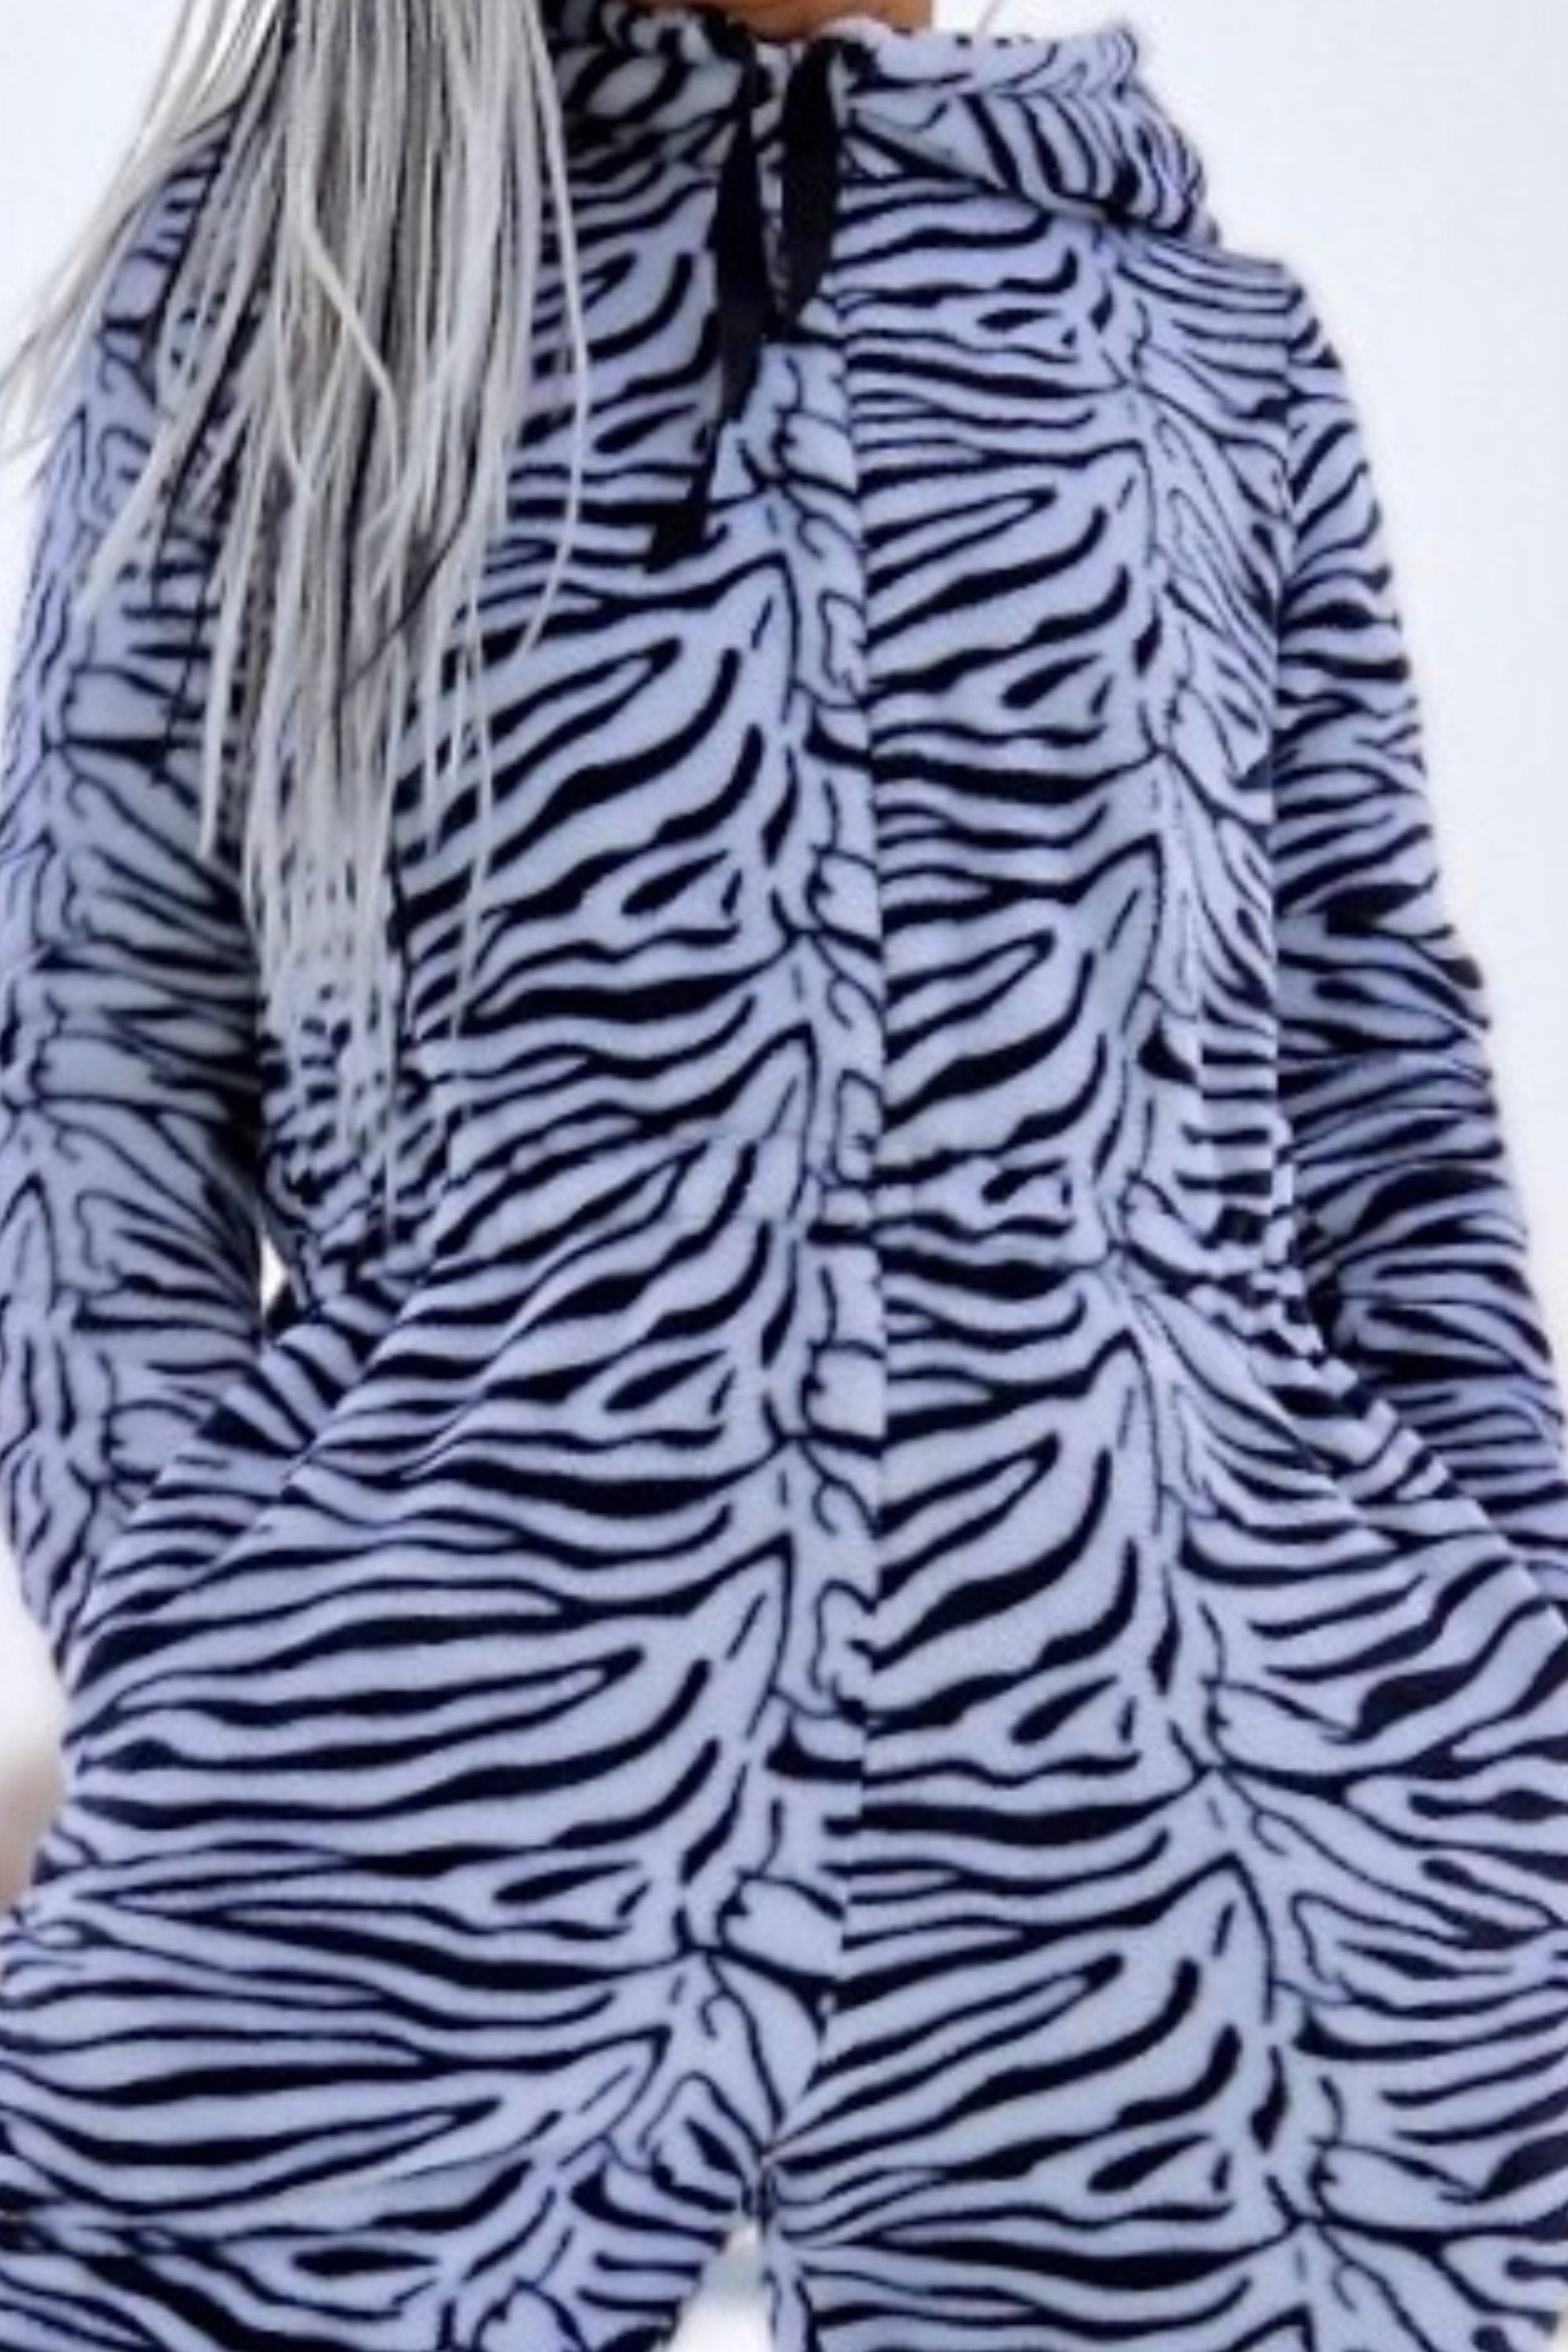 Zebra Onesie, Women fleece Onesie, Adult Onesie, Hooded Women Jumpsuite, Women Pajama, Fleece Pajama, Warm Winter Homewear